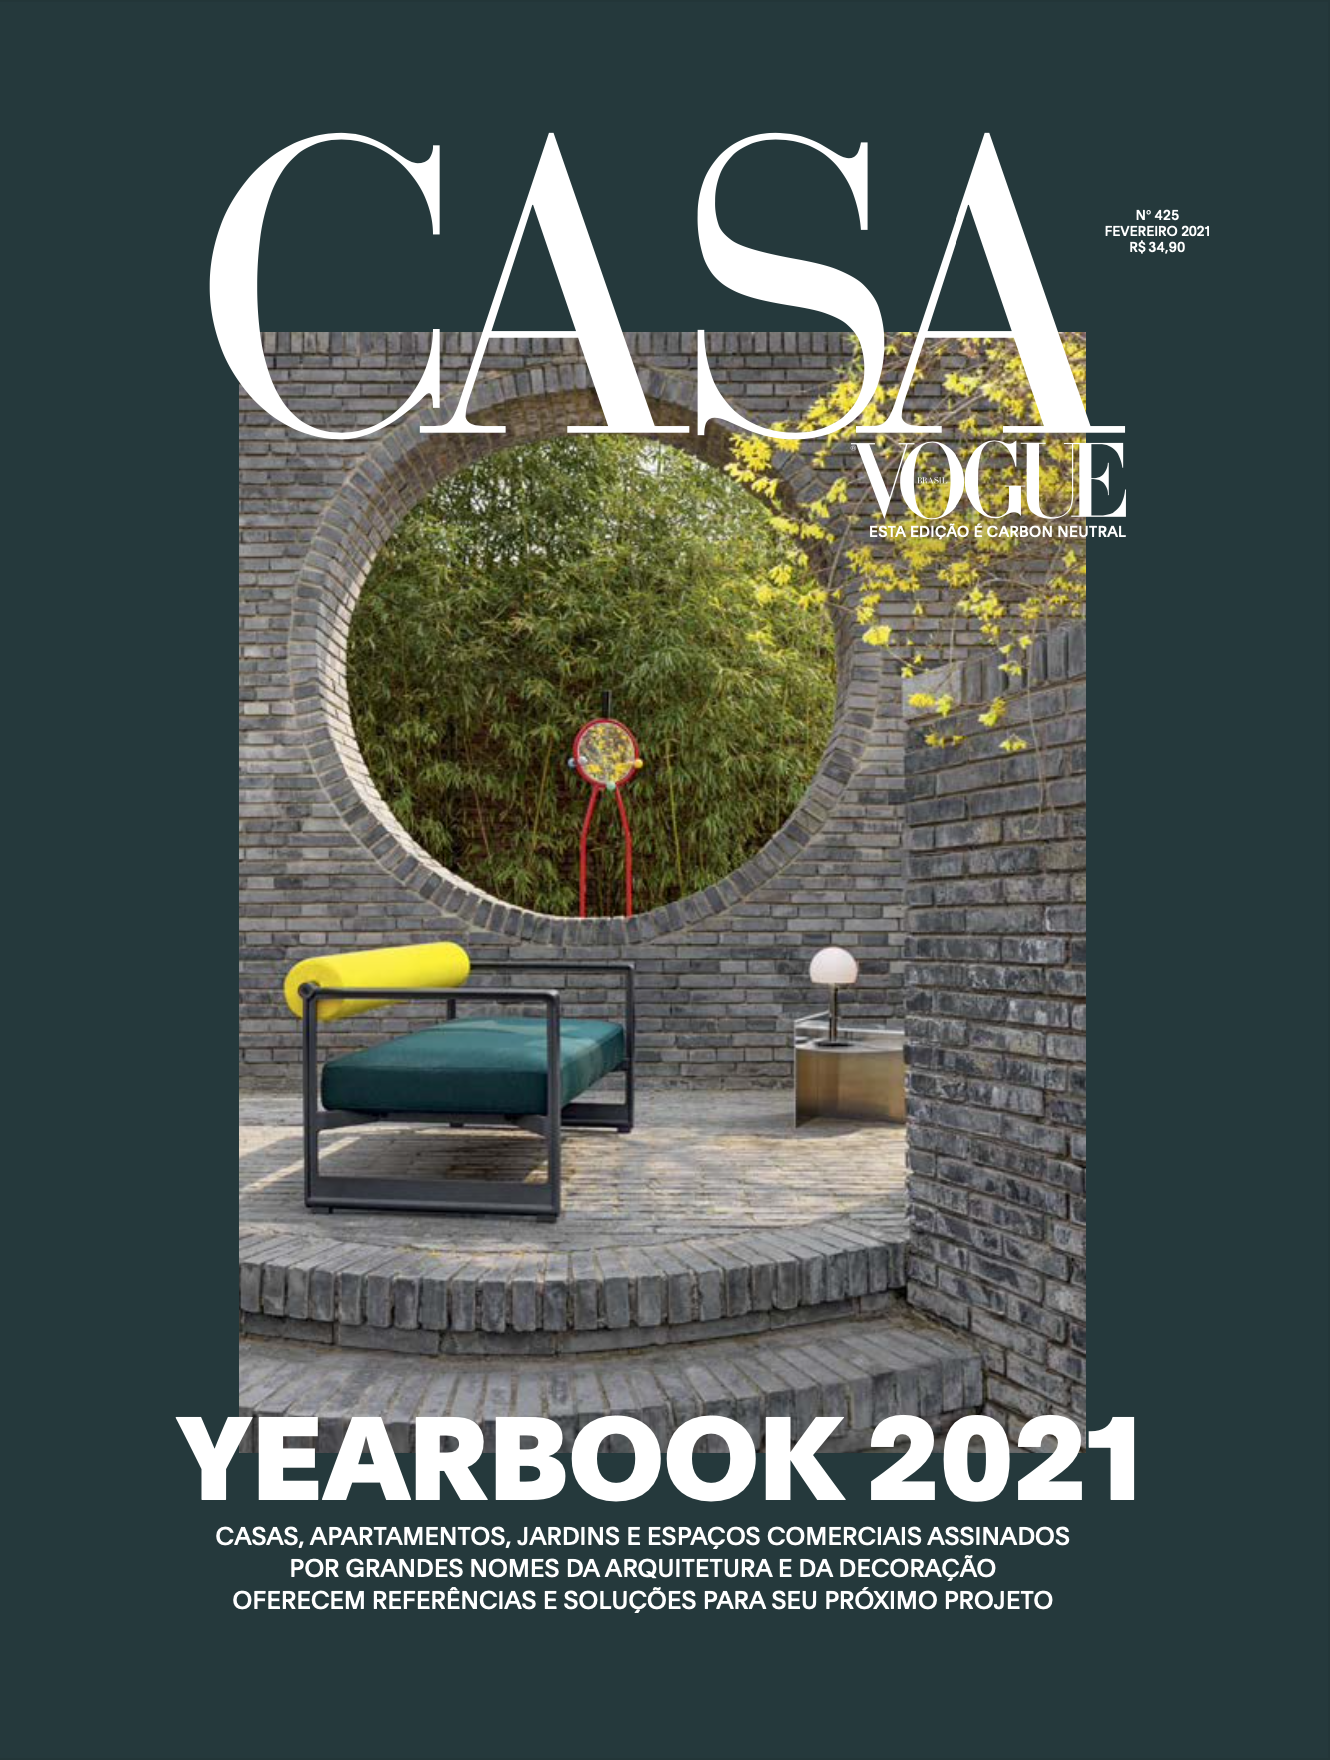 casaVogue-yearbook2021B.png